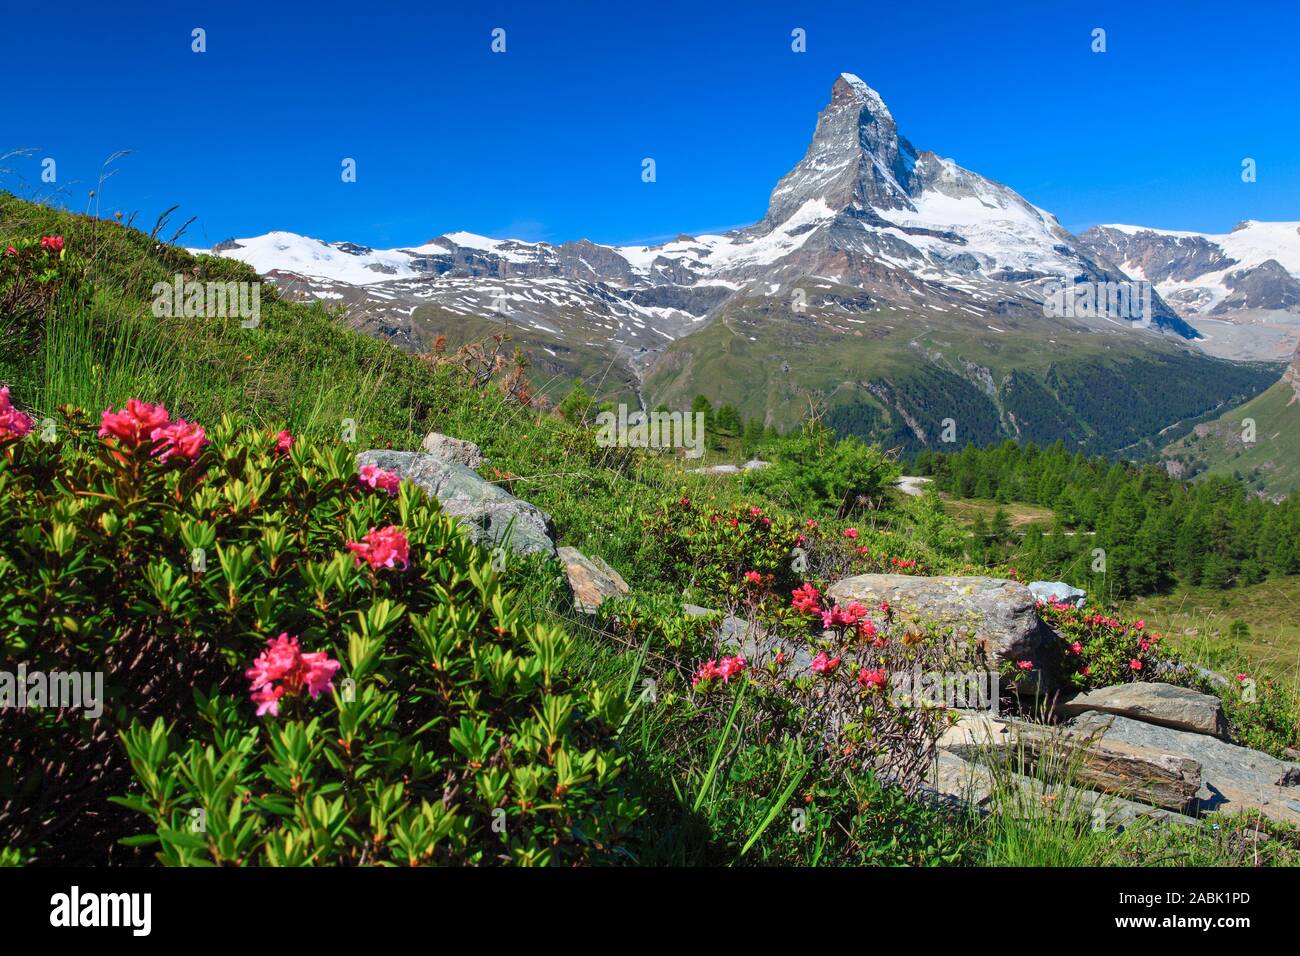 The Matterhorn (4478 m) with flowering Alpenrose (Rhododendron ferrugineum). Zermatt, Valais, Switzerland Stock Photo